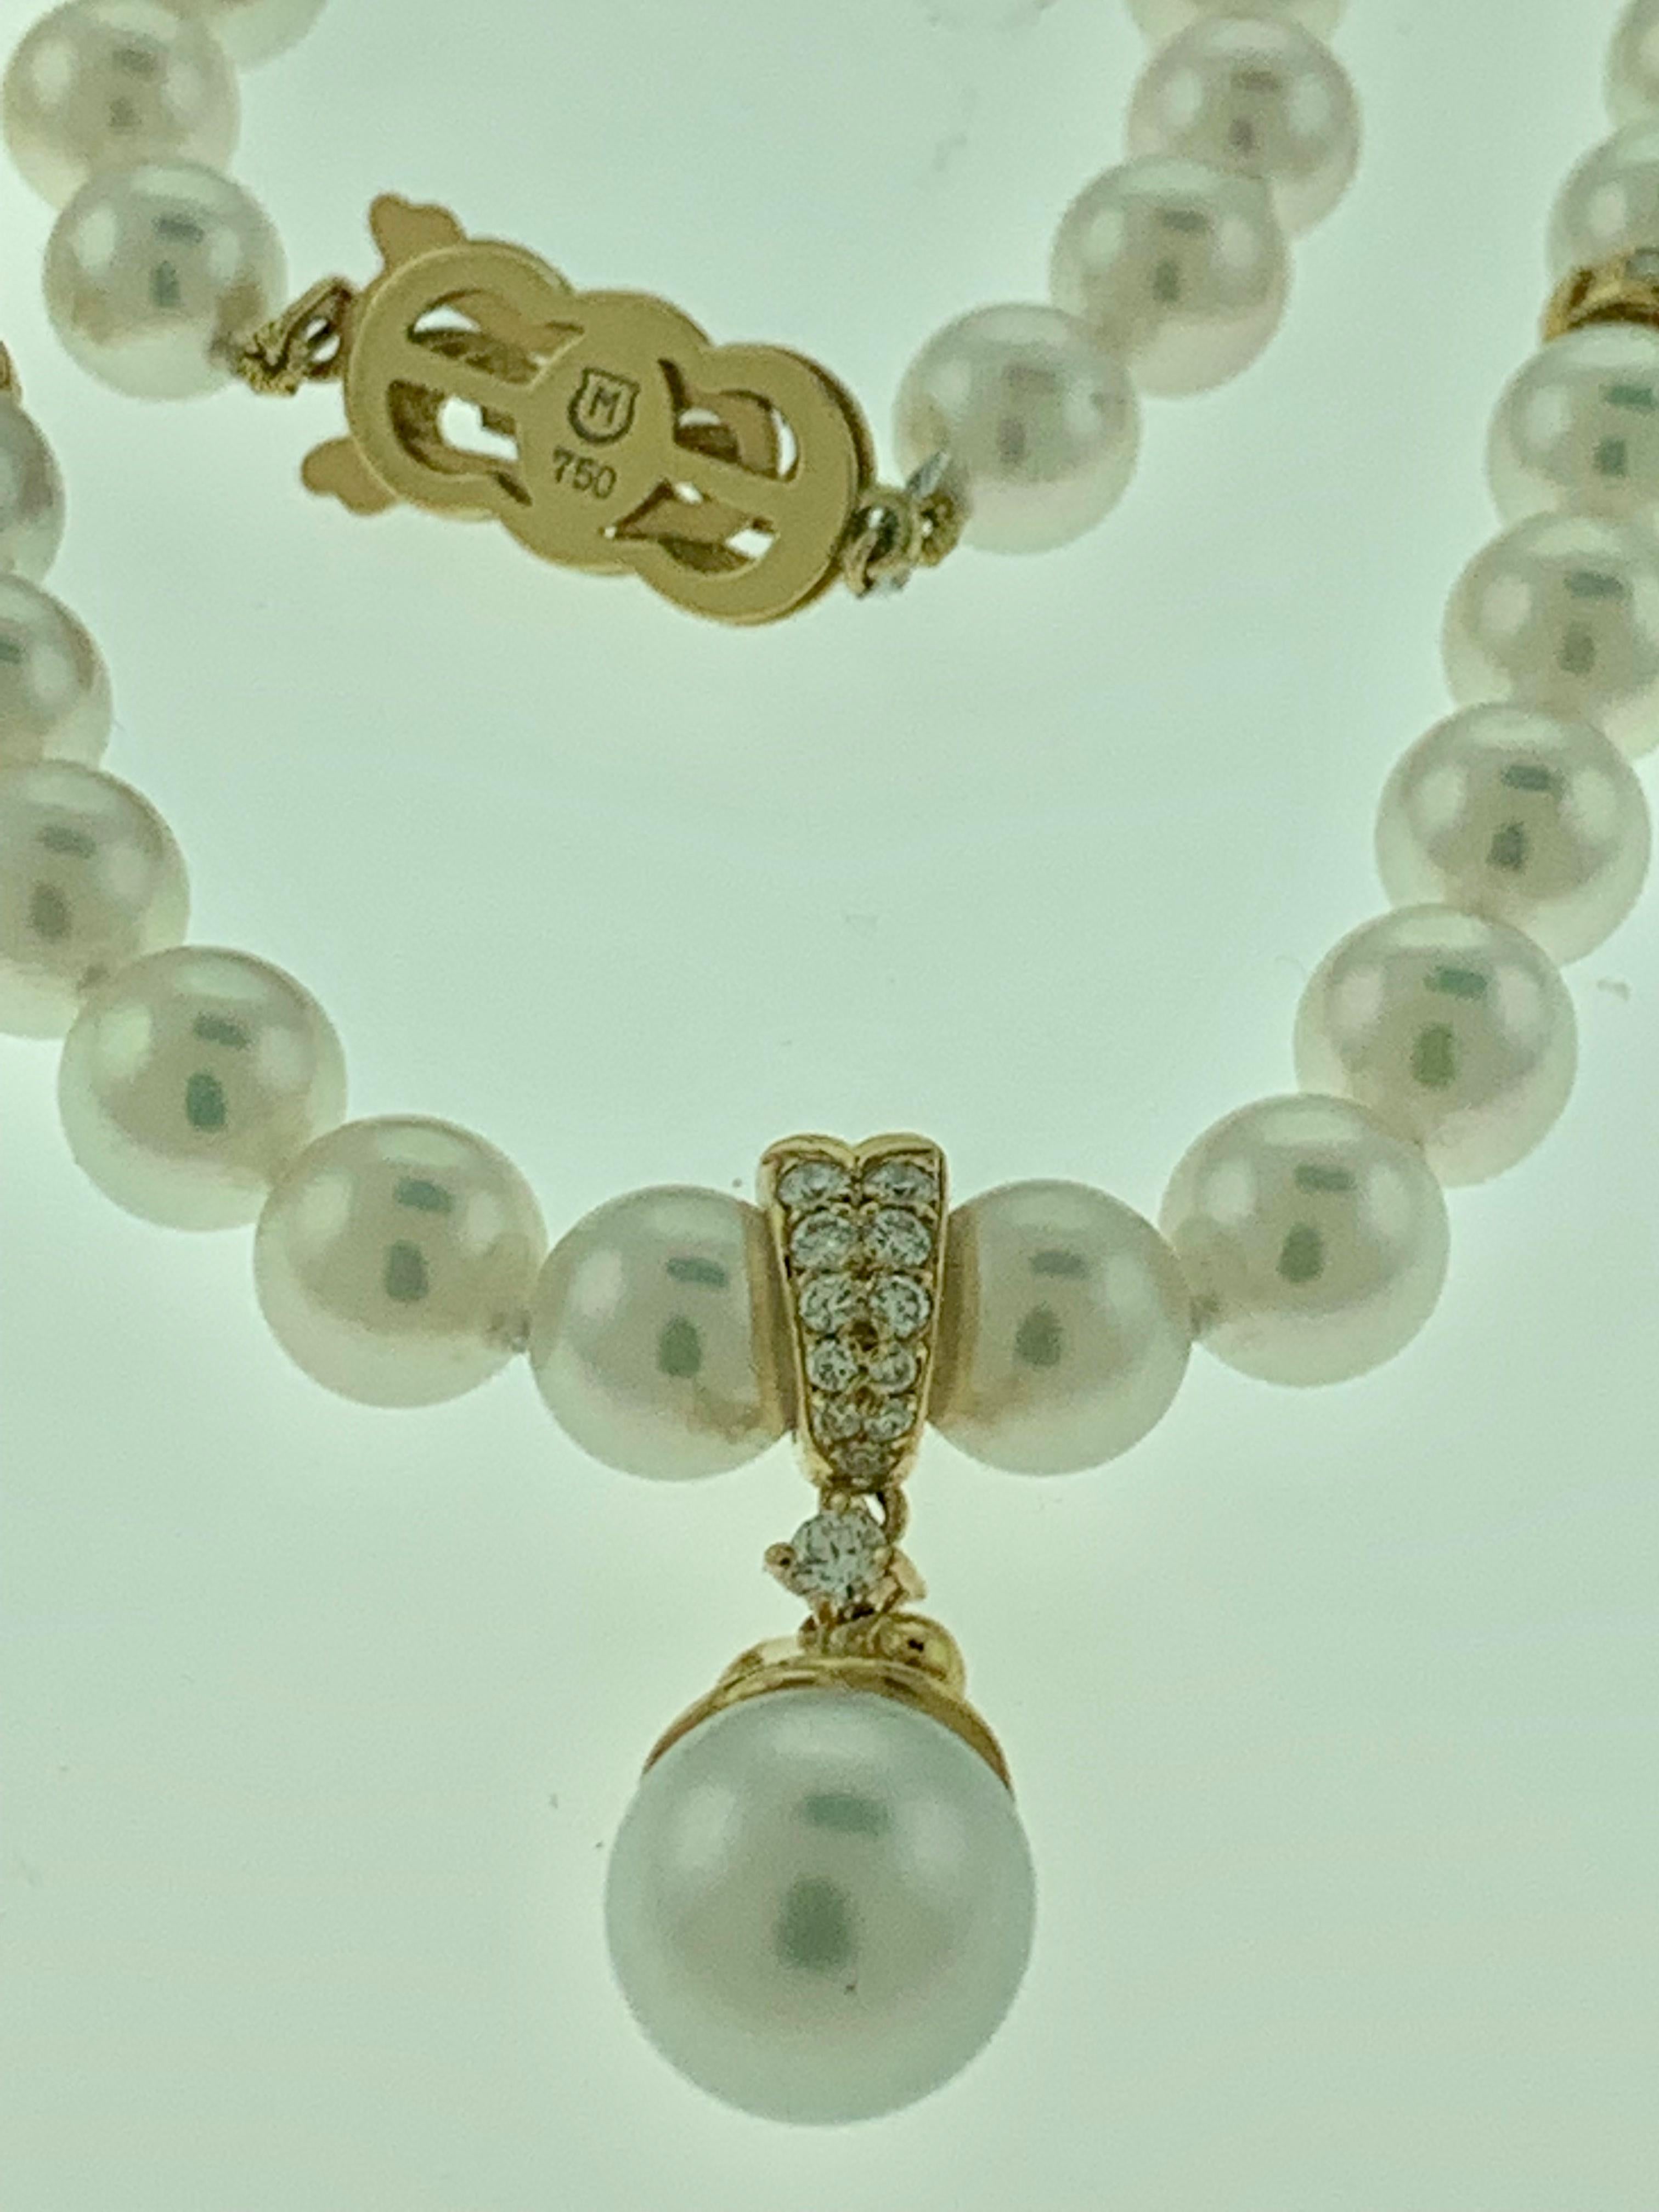 drop bead necklace